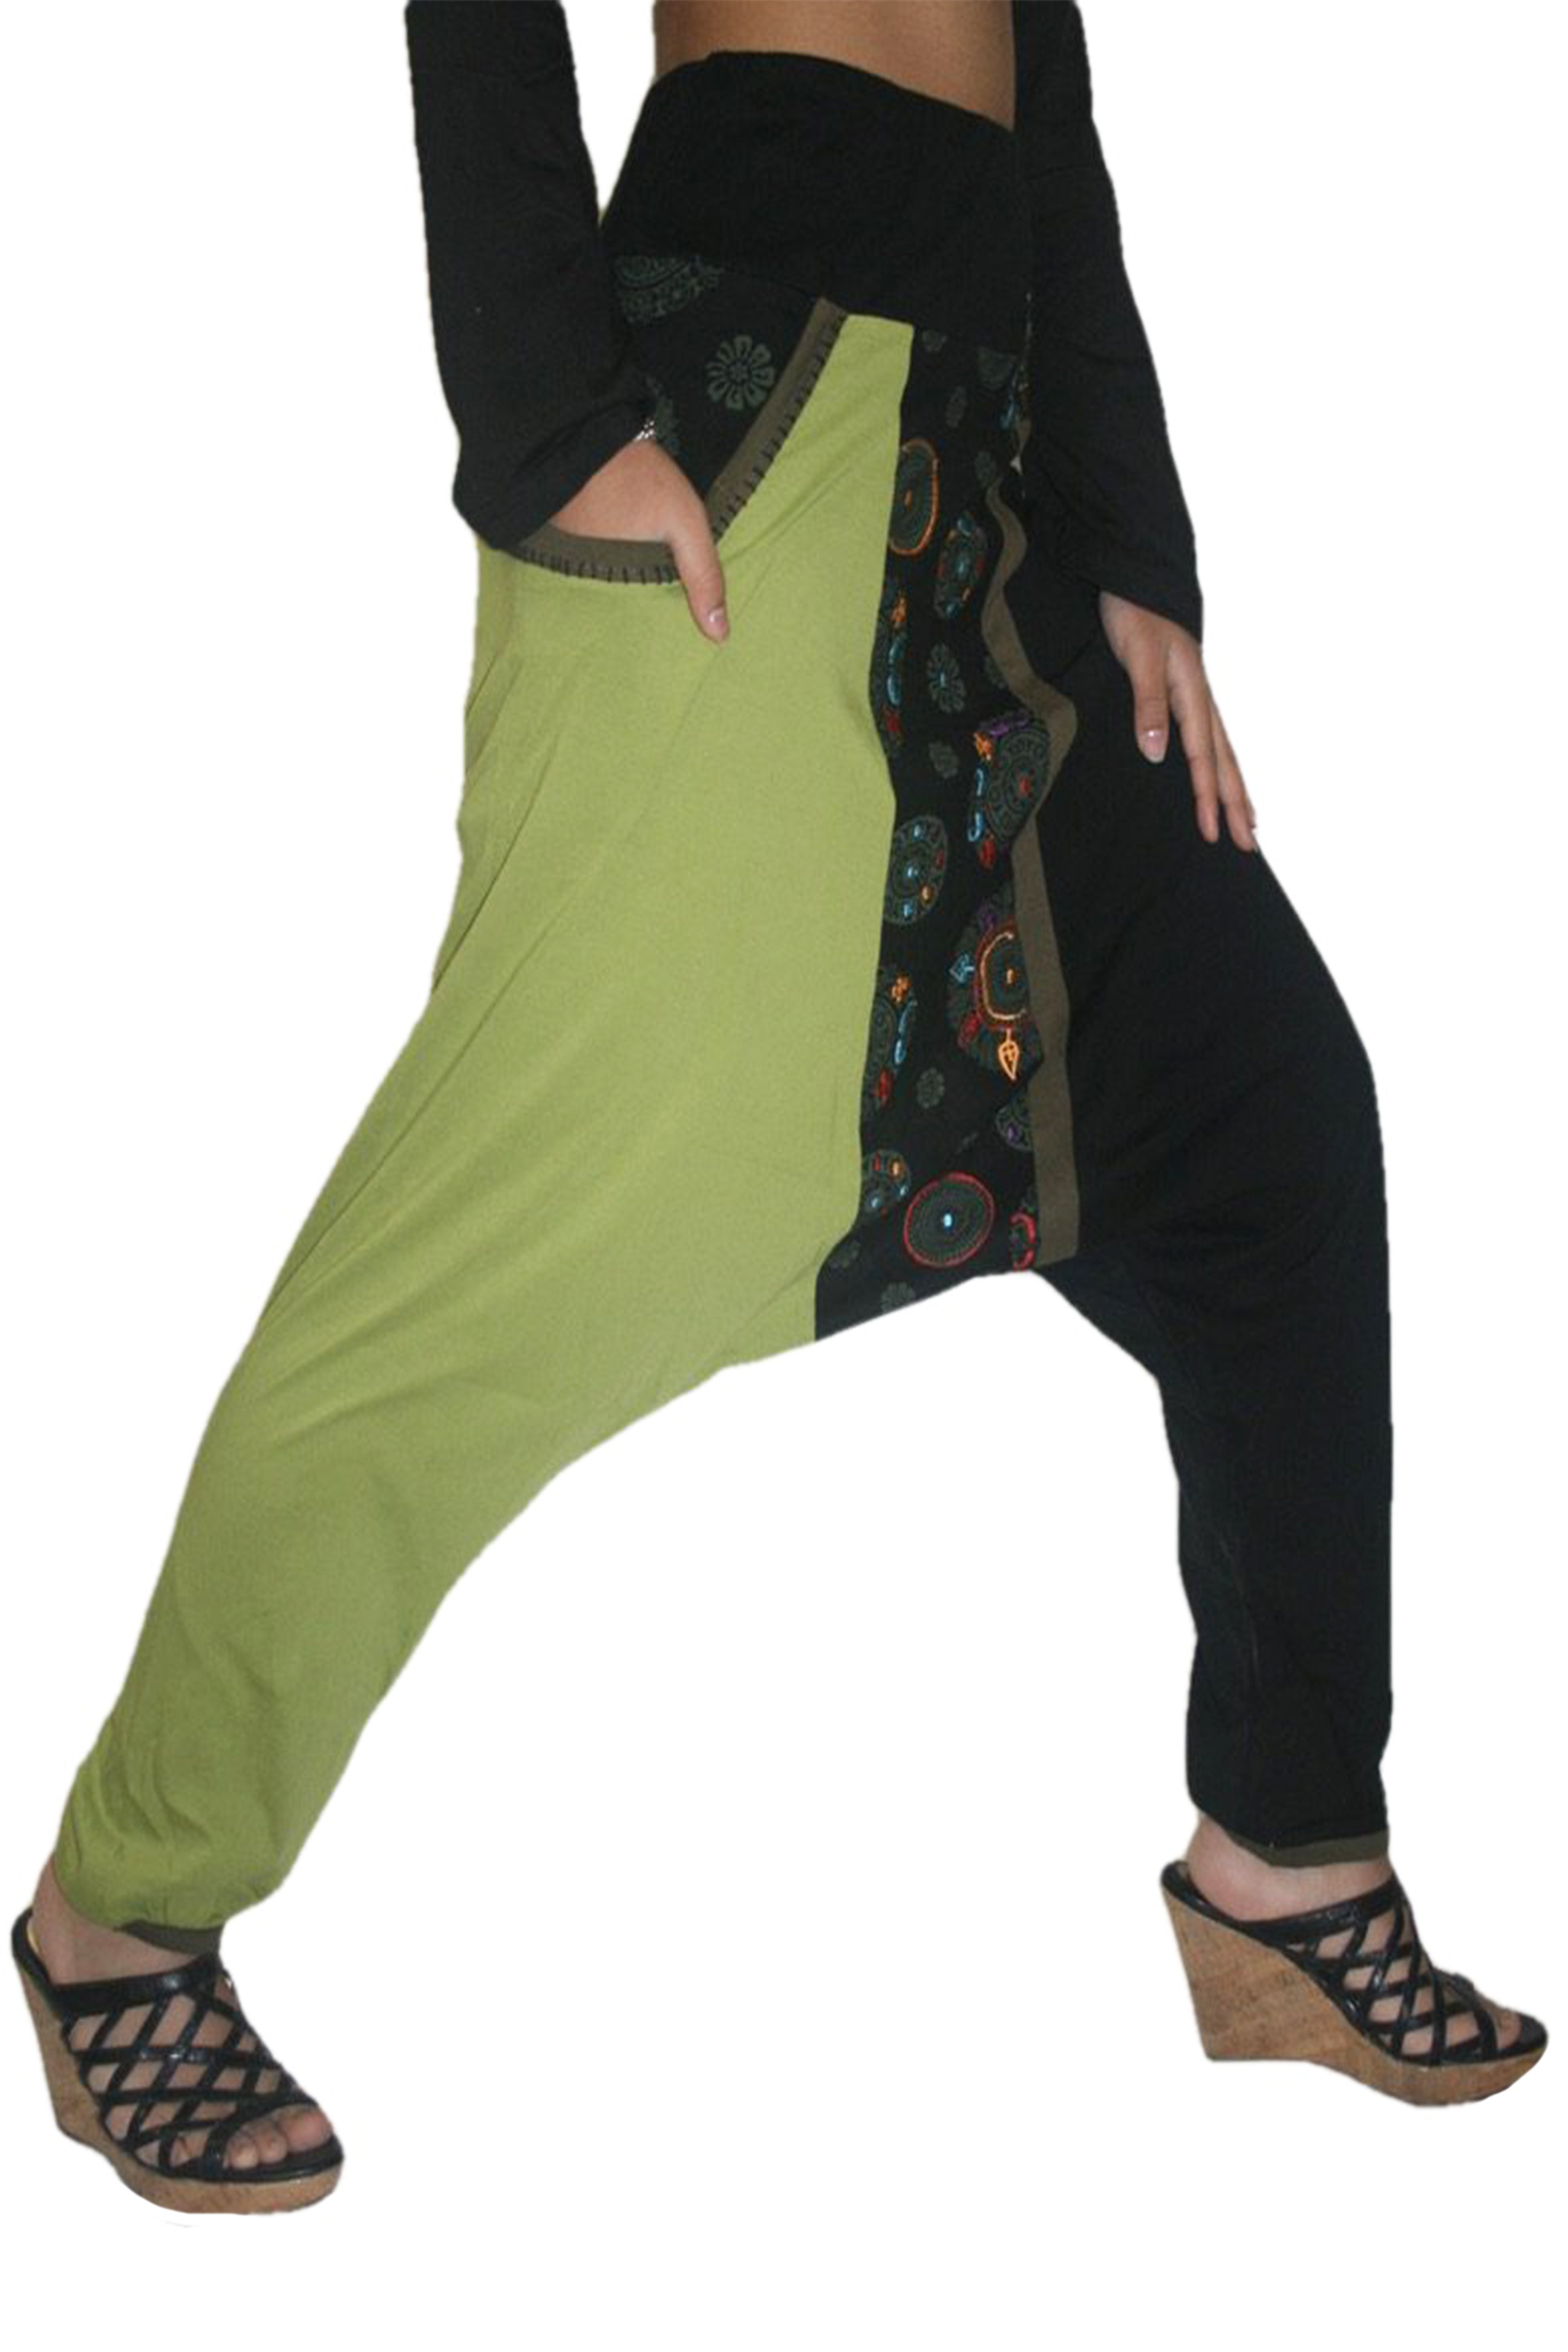 केट प्रिटी महिलाओं के लिए सॉलिड कॉटन हैरम पैंट - Buy केट प्रिटी महिलाओं के  लिए सॉलिड कॉटन हैरम पैंट Online at Best Prices in India | Flipkart.com